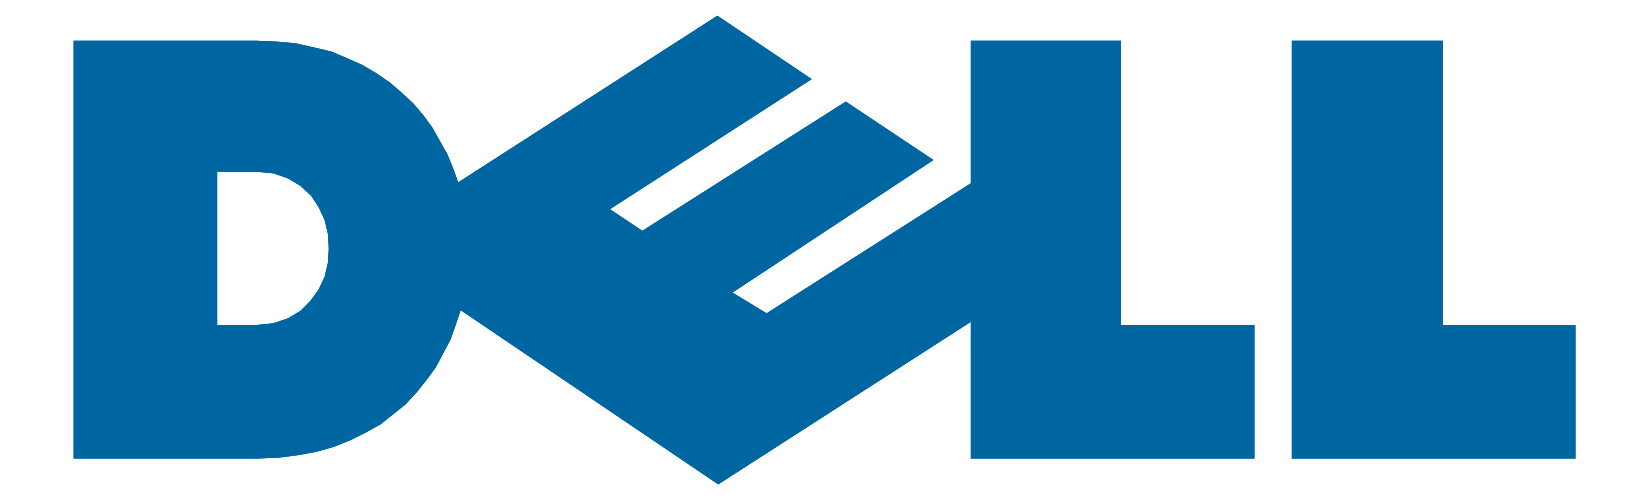 company_logo4